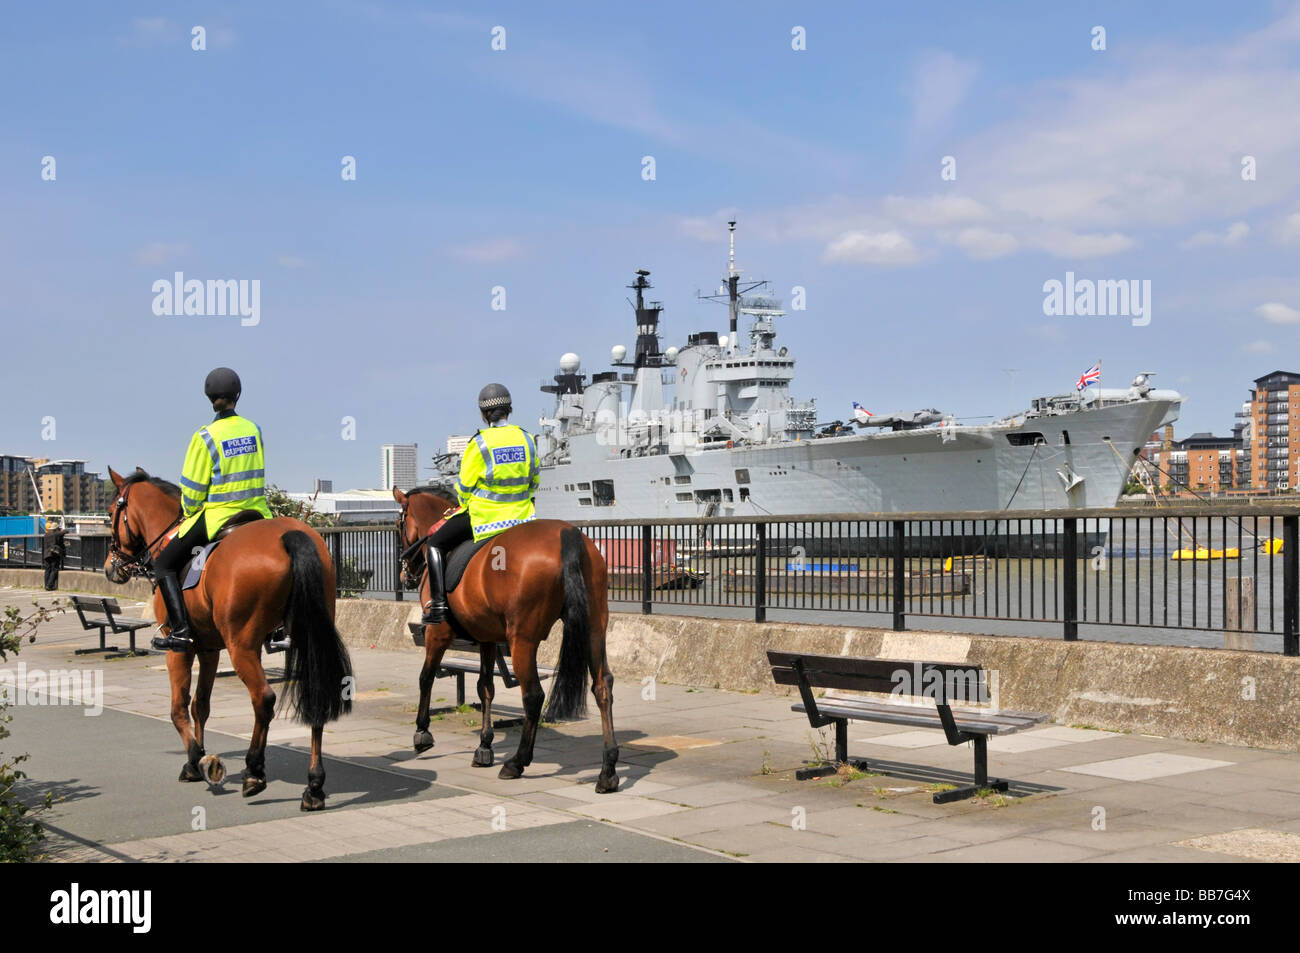 Royal Navy acorazado HMS Ilustre luz portaaviones amarrado en el río Támesis de Londres Greenwich pasando de patrulla de la policía montada Foto de stock